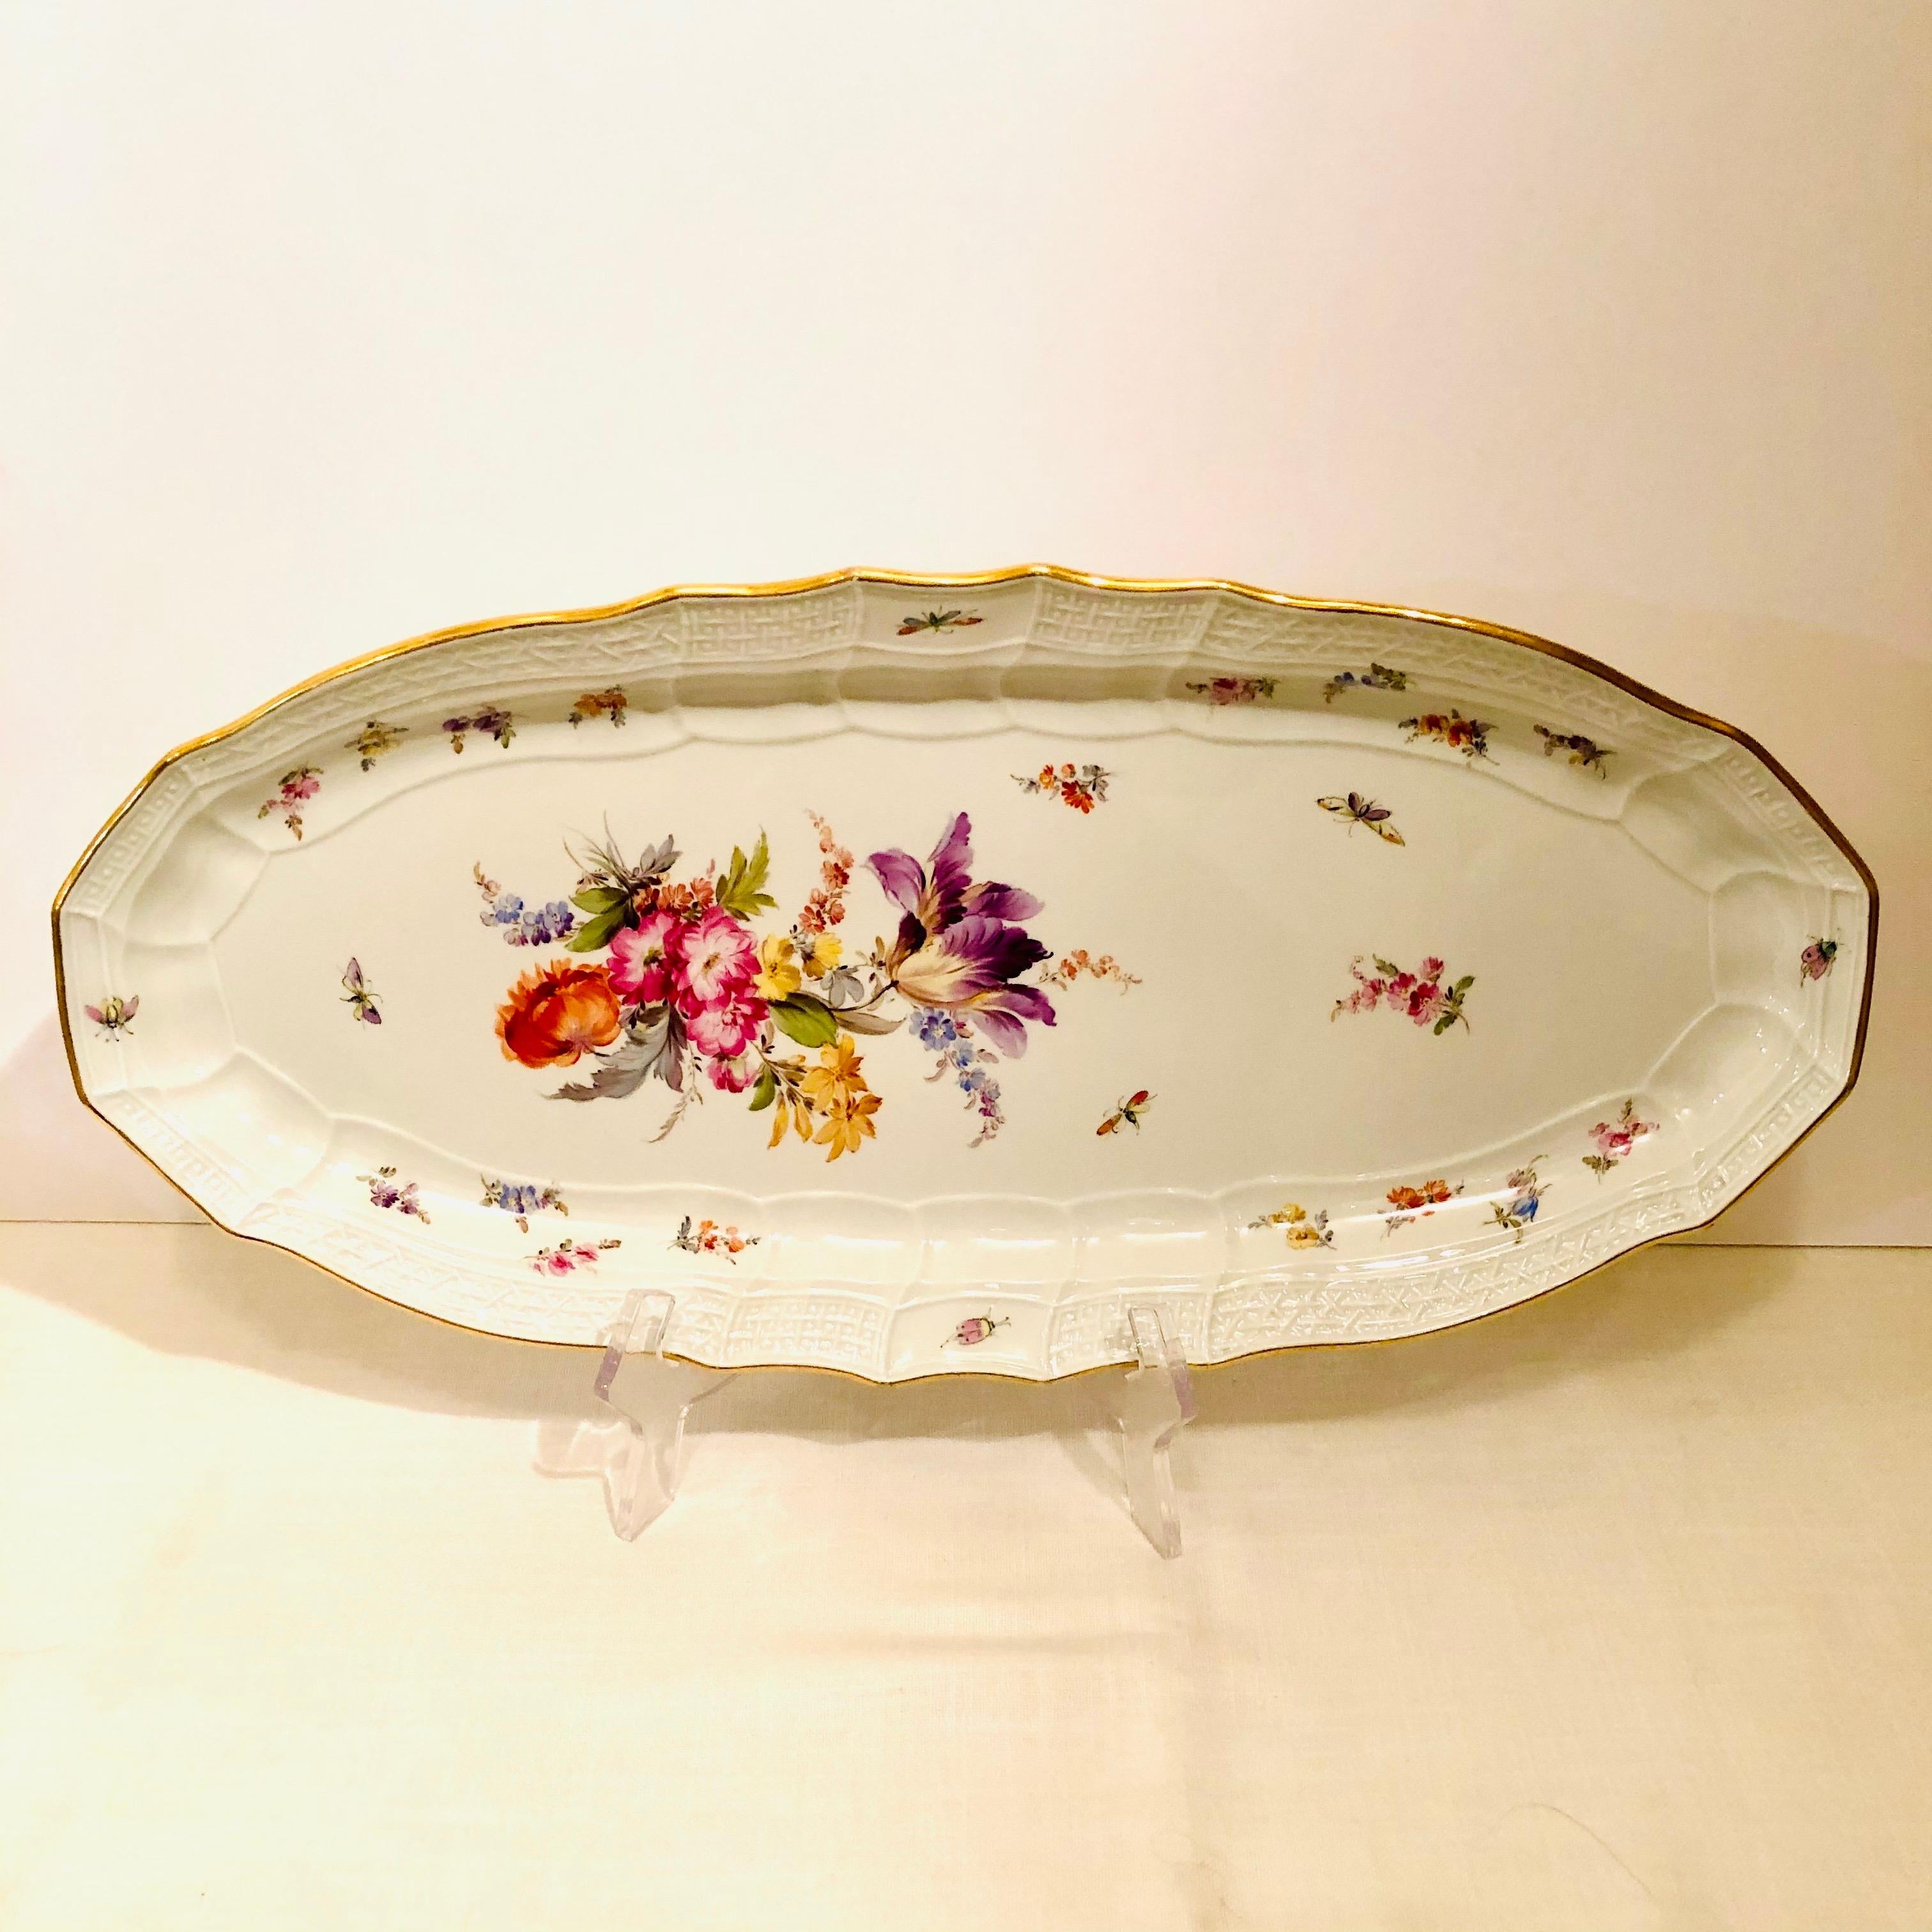 Porcelain Antique Meissen Fish Platter with a Bouquet of Flowers Including a Purple Tulip